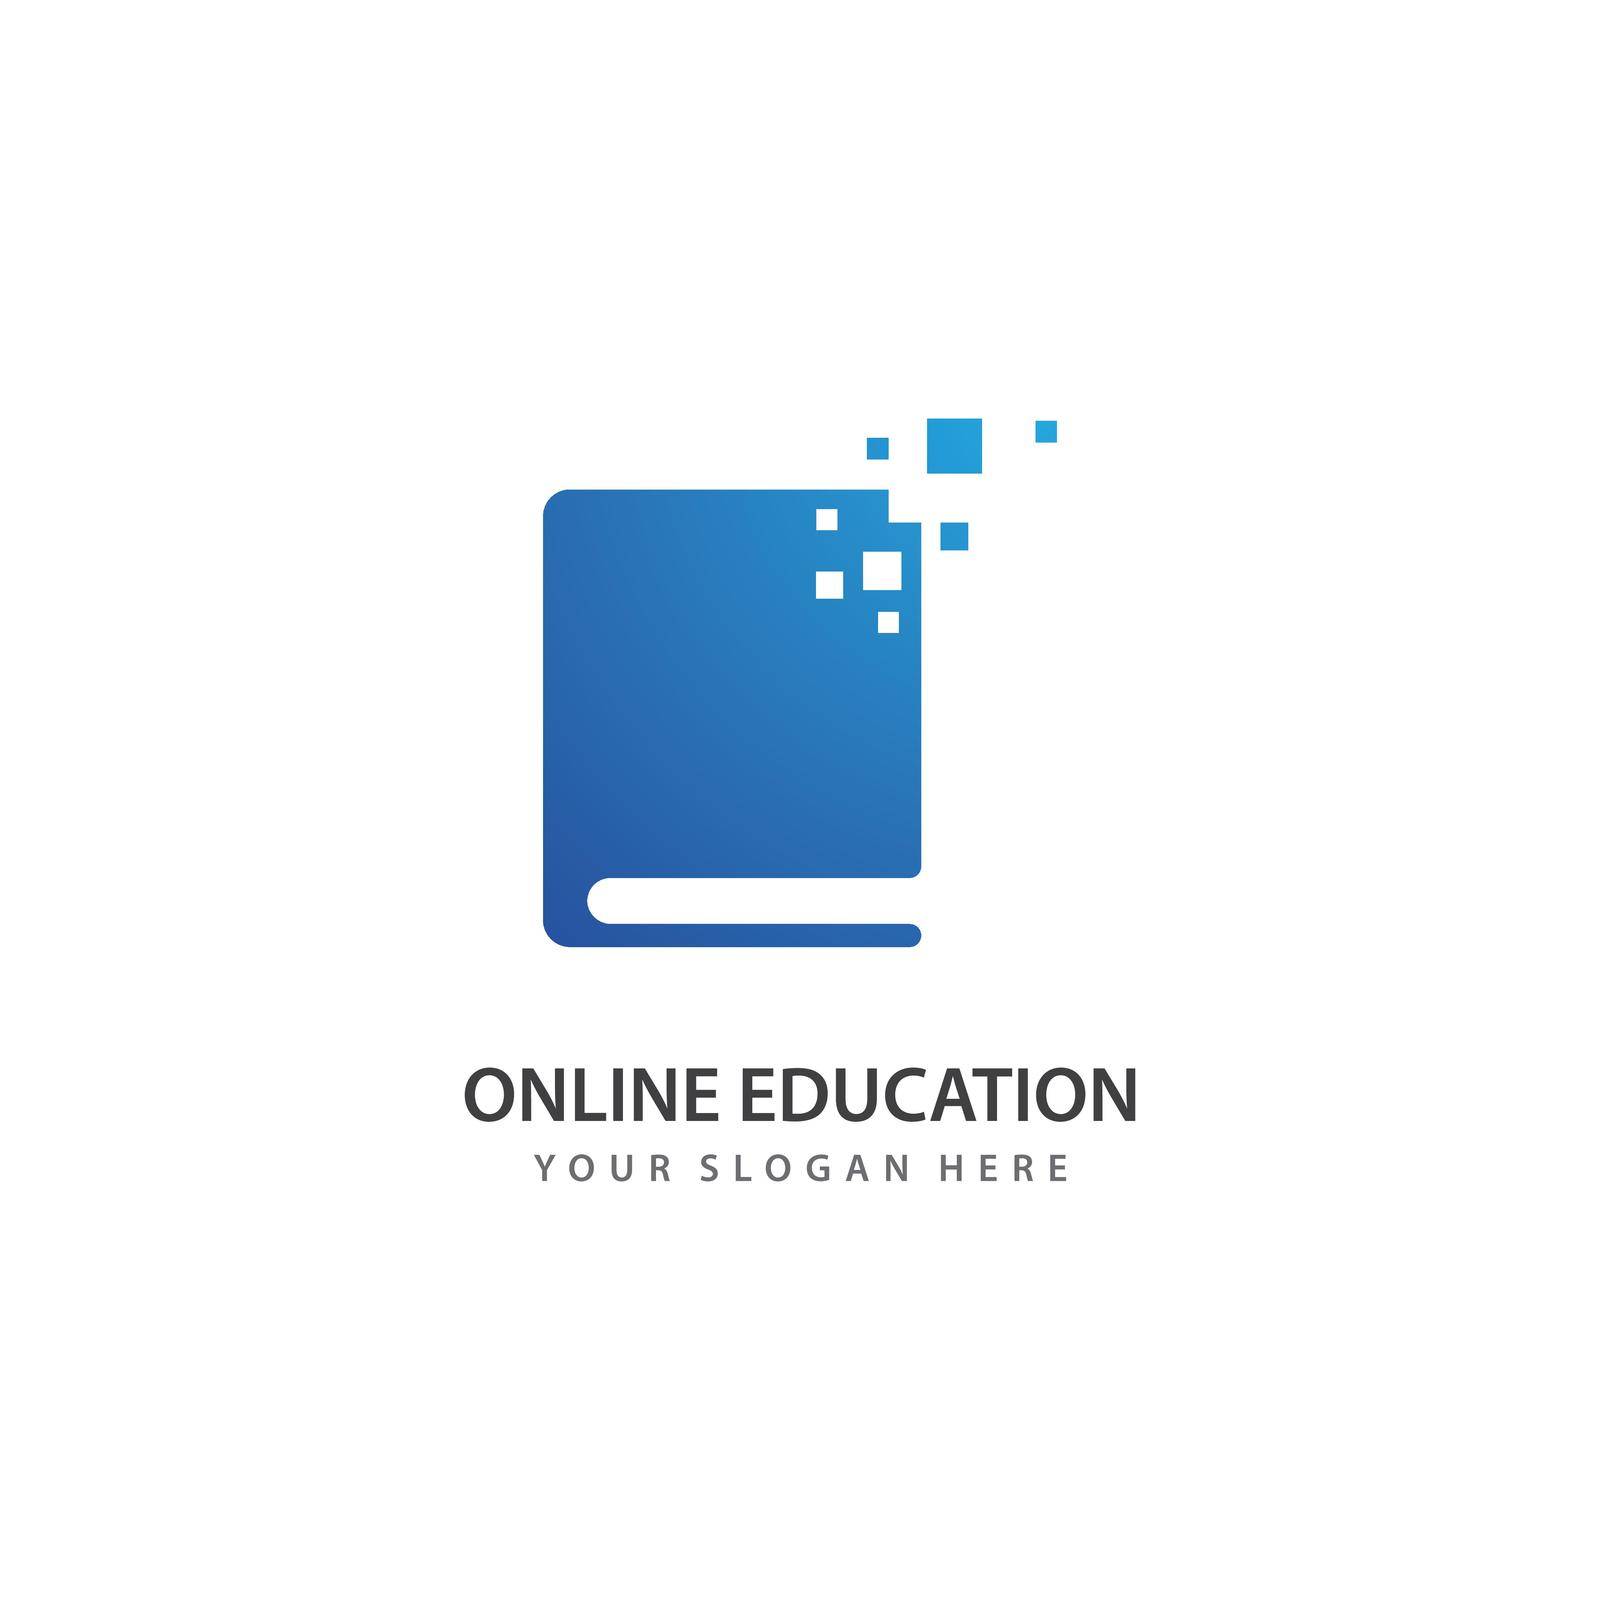 Online education illustration logo vector